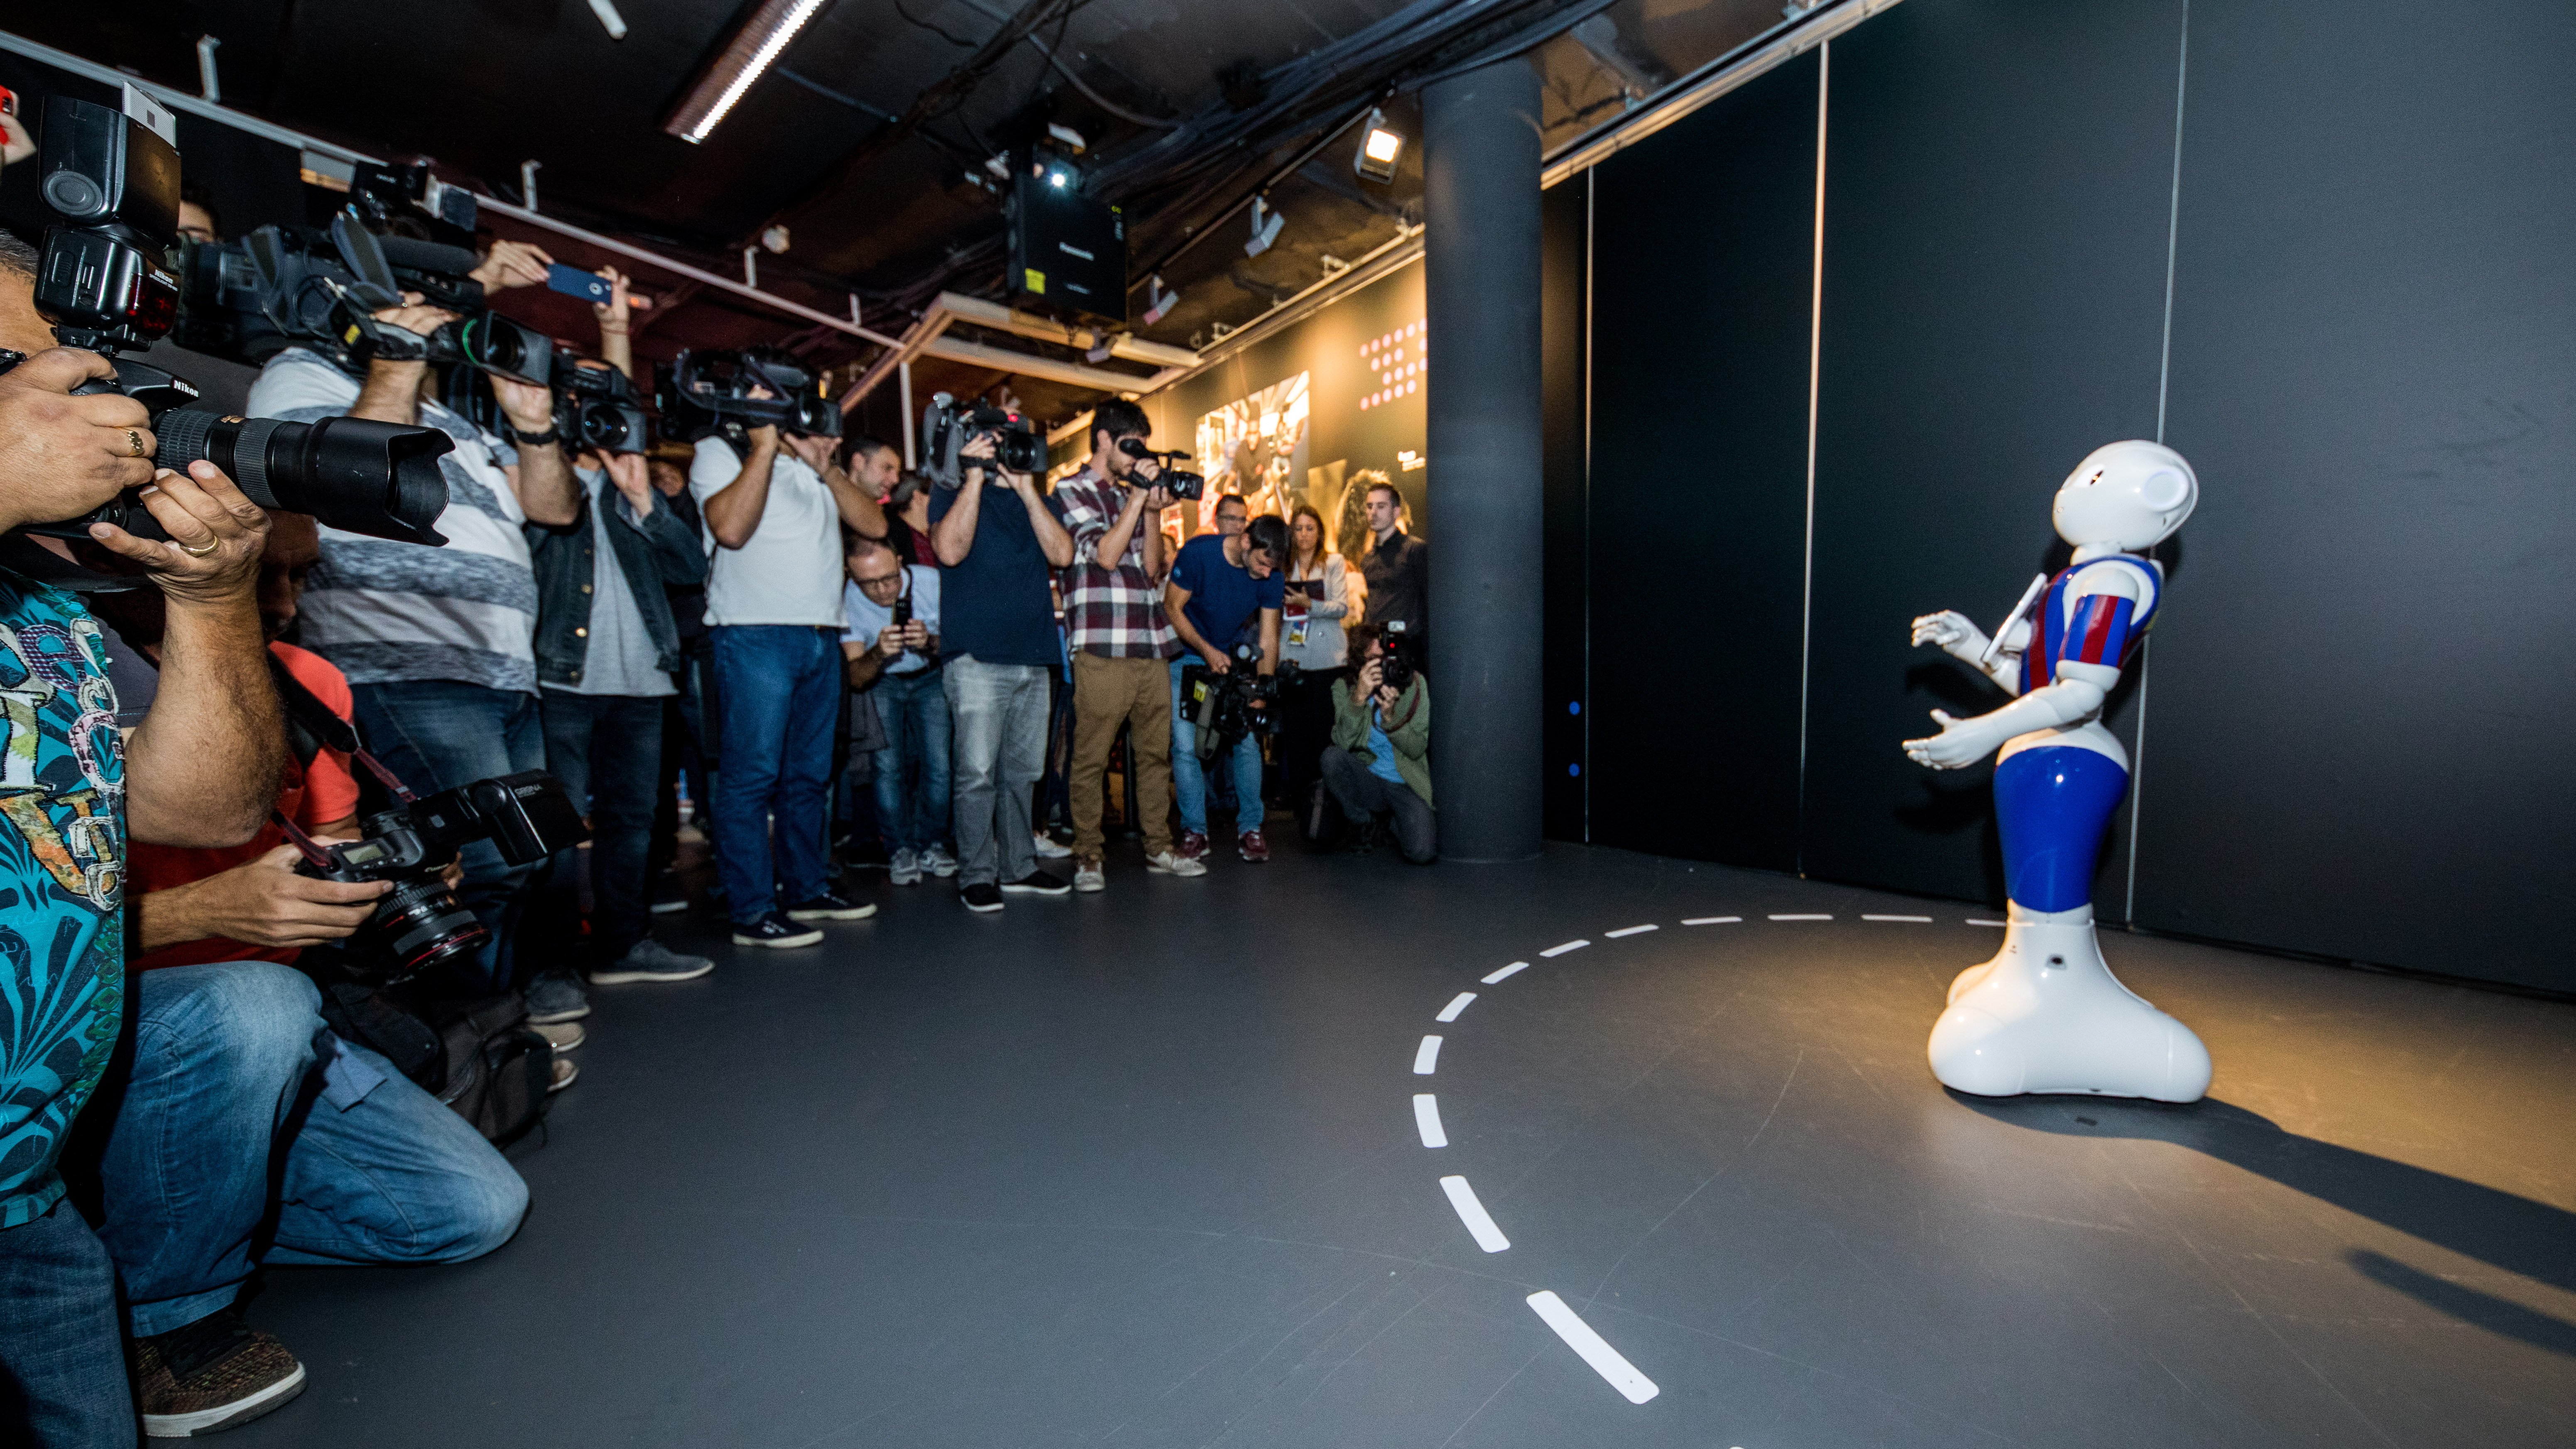 Un robot humanoide y tecnología 360º para mostrar los valores de la Fundación Barça